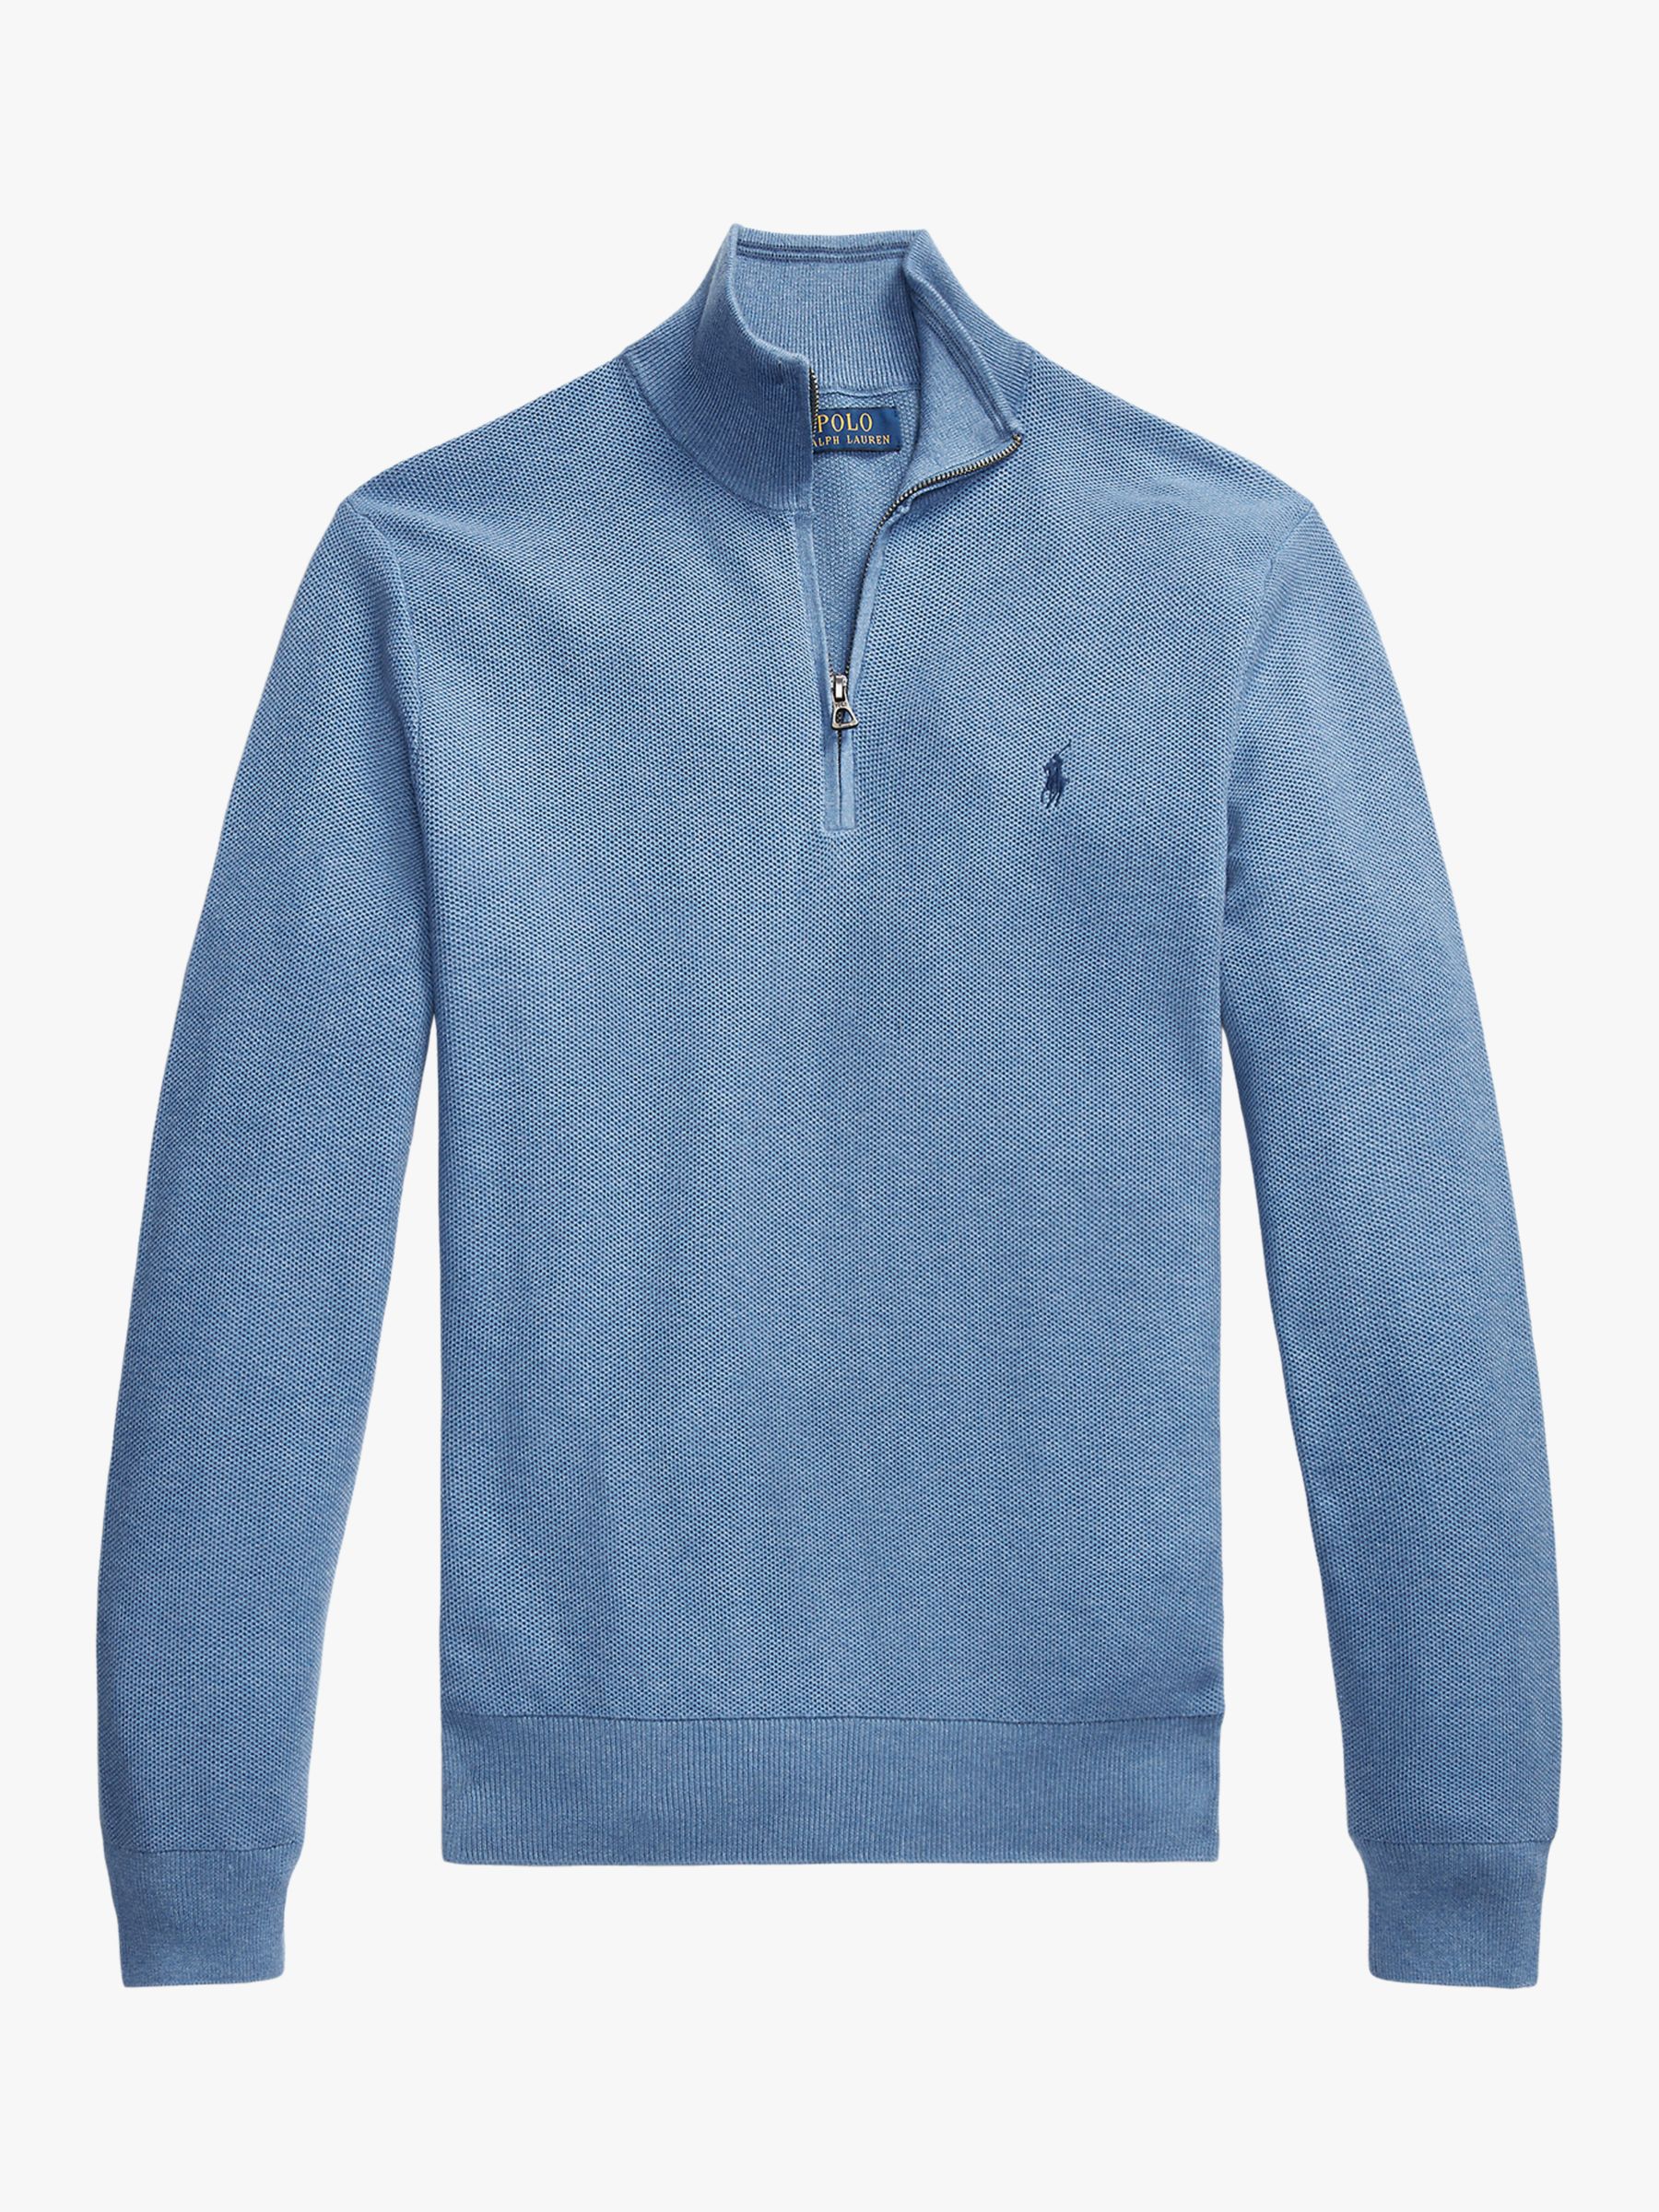 Polo Ralph Lauren Long Sleeve Quarter Zip Jumper, Blue, S